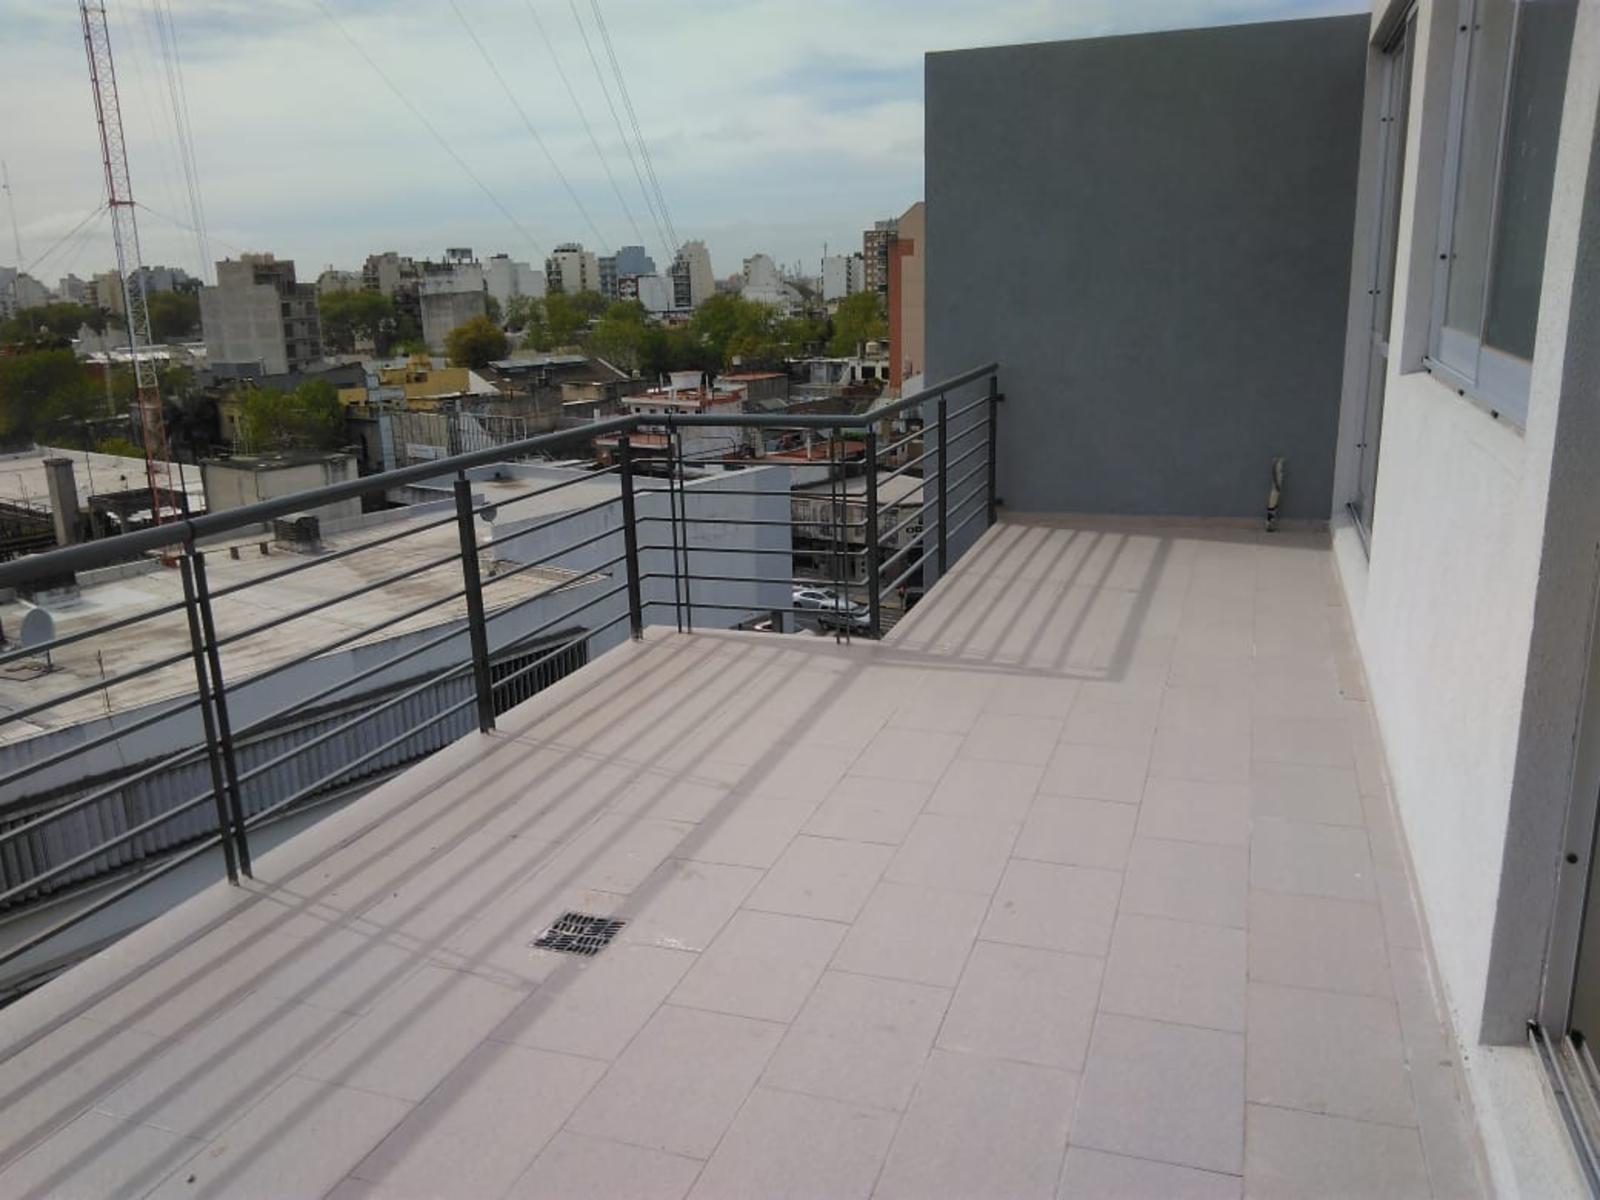 # 2 Amb # Balcon Terraza # Frente # Gge Opcional